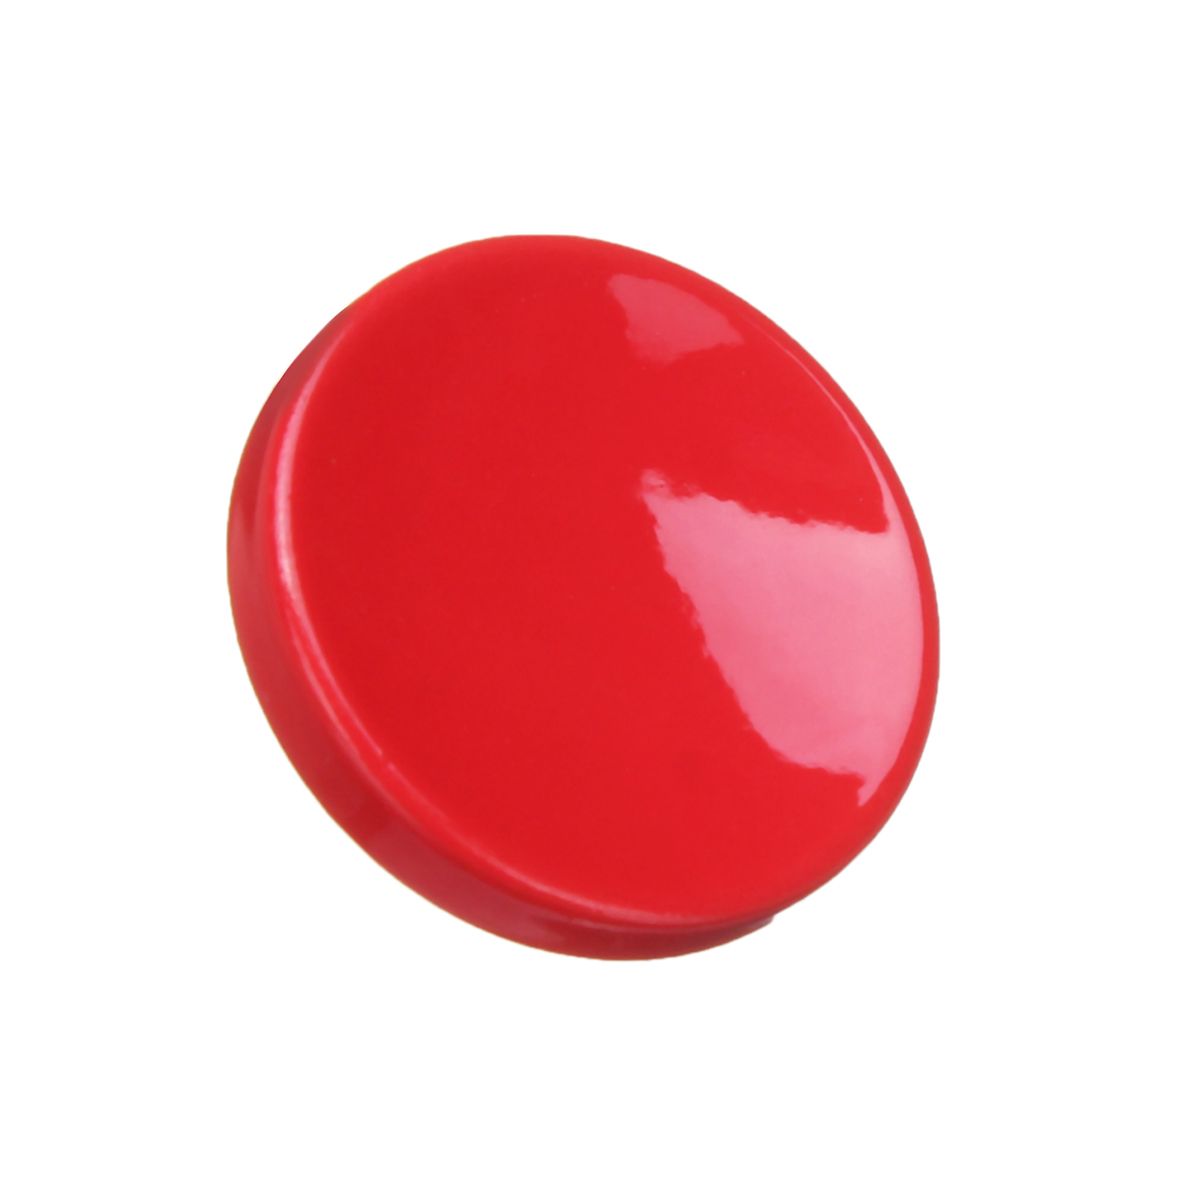 Red-Aluminum-Alloy-Shutter-Release-Button-for-Fuji-XT2-X20-X100-Buttons-1296992